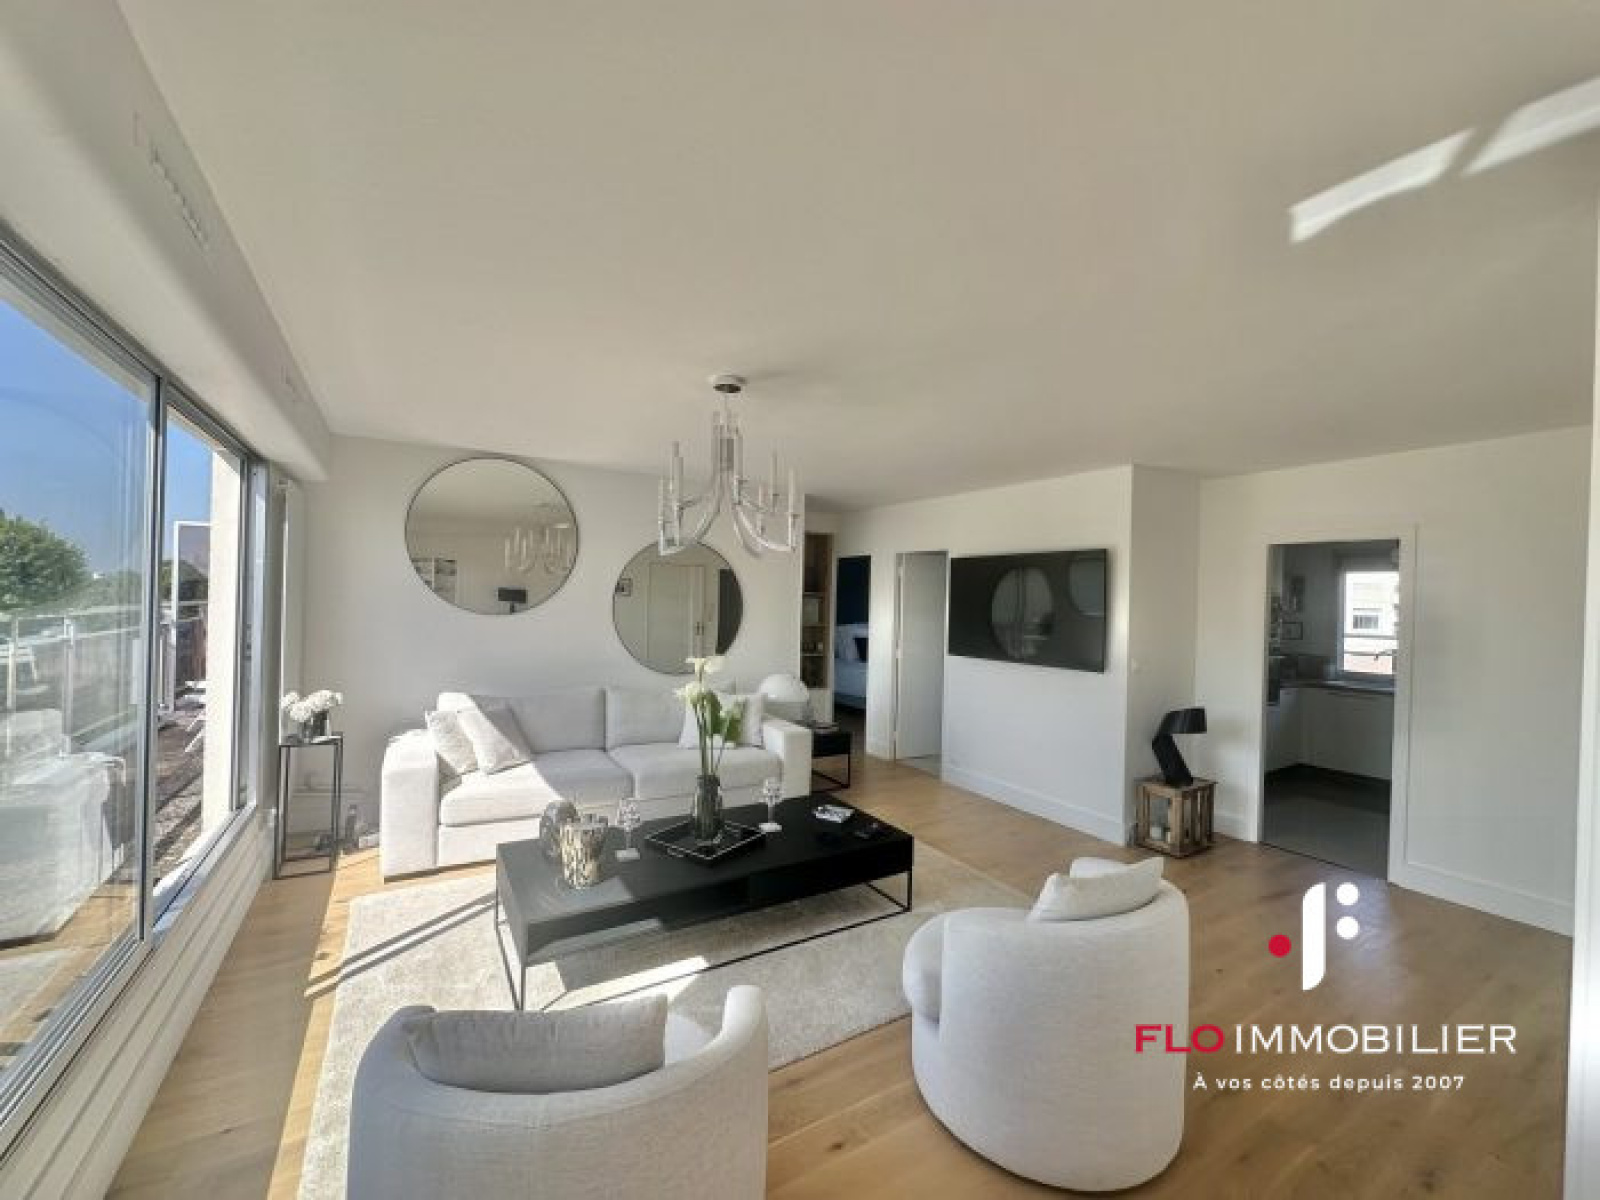 Vente Appartement 110m² 6 Pièces à Caen (14000) - Flo Immobilier